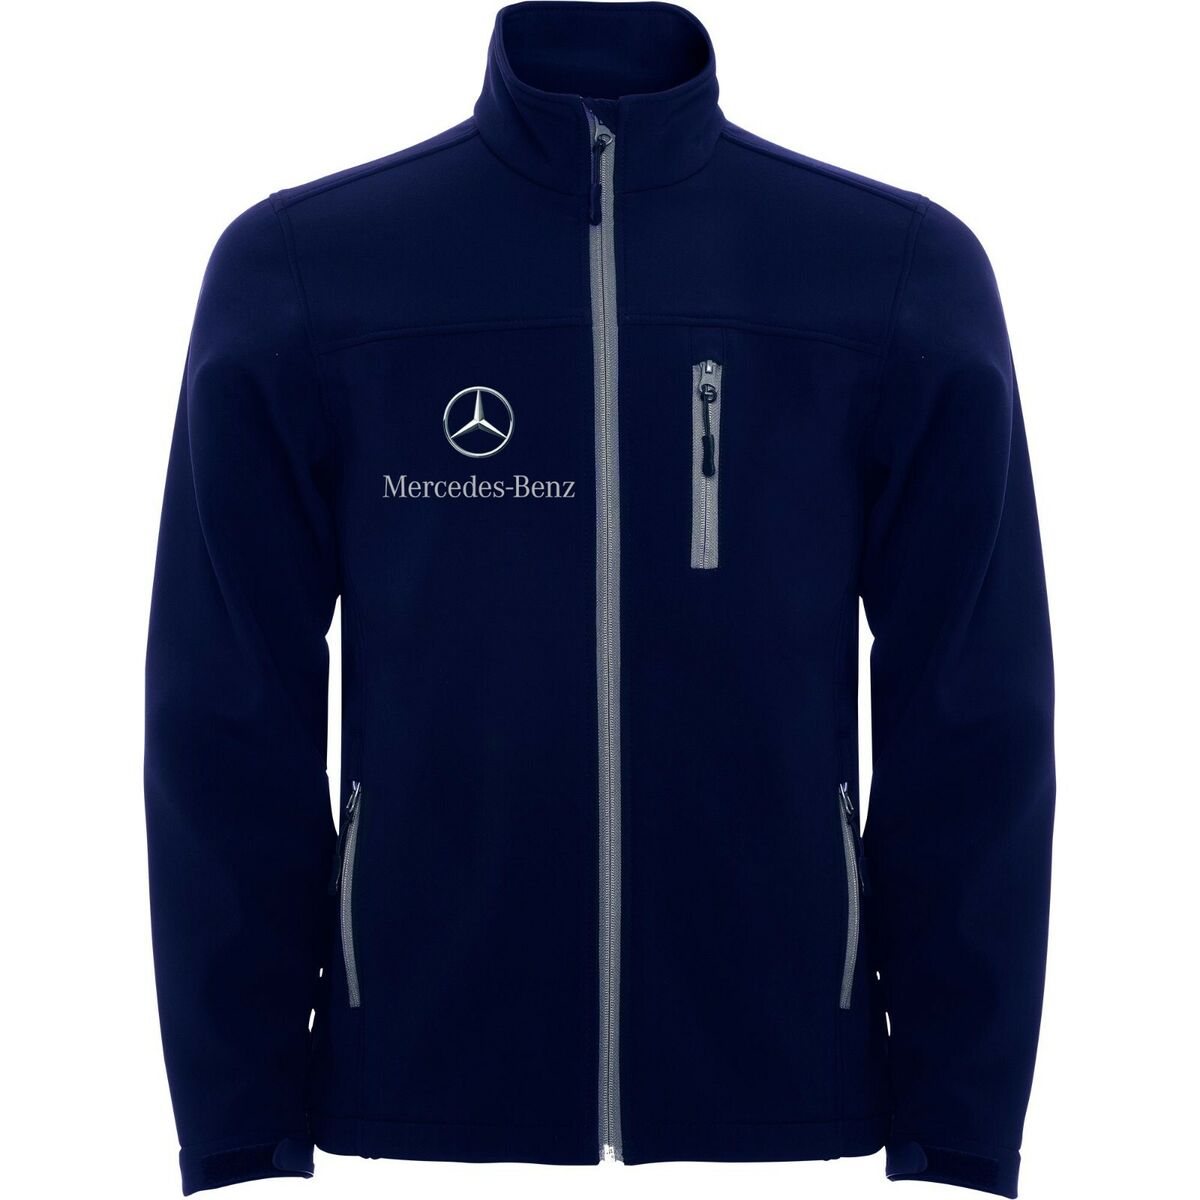 Logo Embroidered Mercedes Benz AMG on Softshell Jacket Veste Coat Vest  Blouson